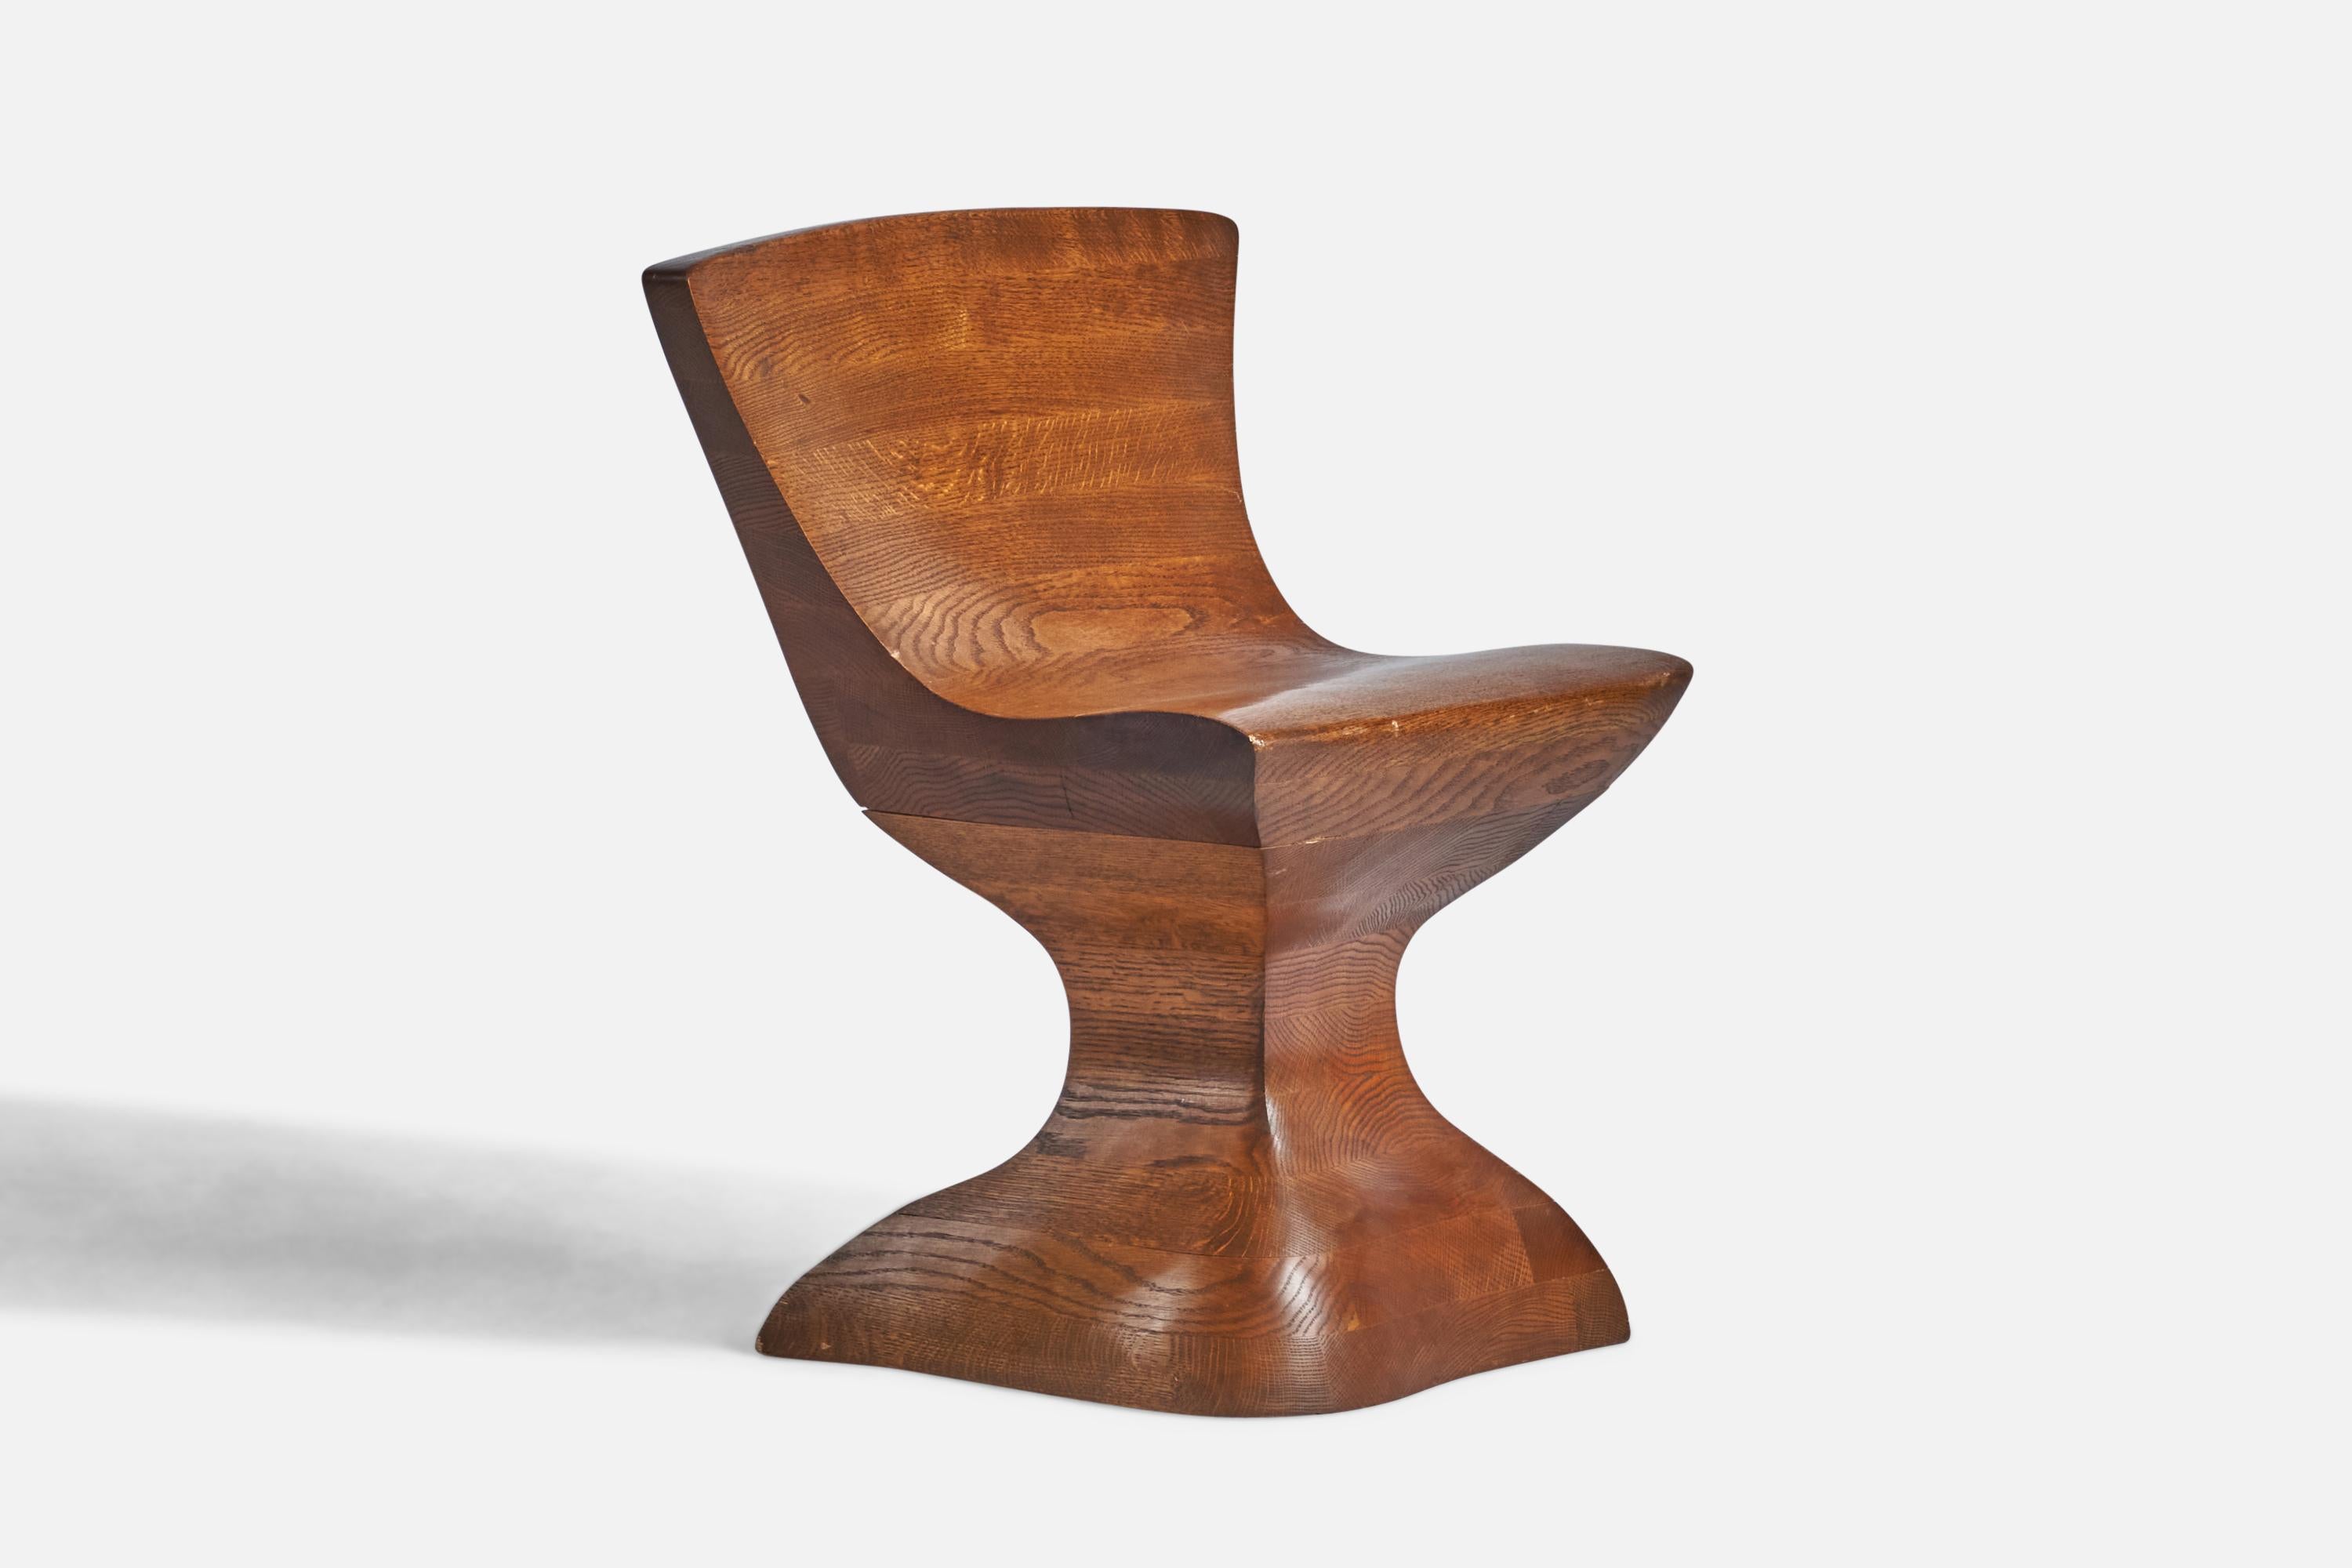 Ein Beistellstuhl aus laminierter und geschnitzter Eiche, entworfen und hergestellt in den USA, ca. 1980er Jahre.
17